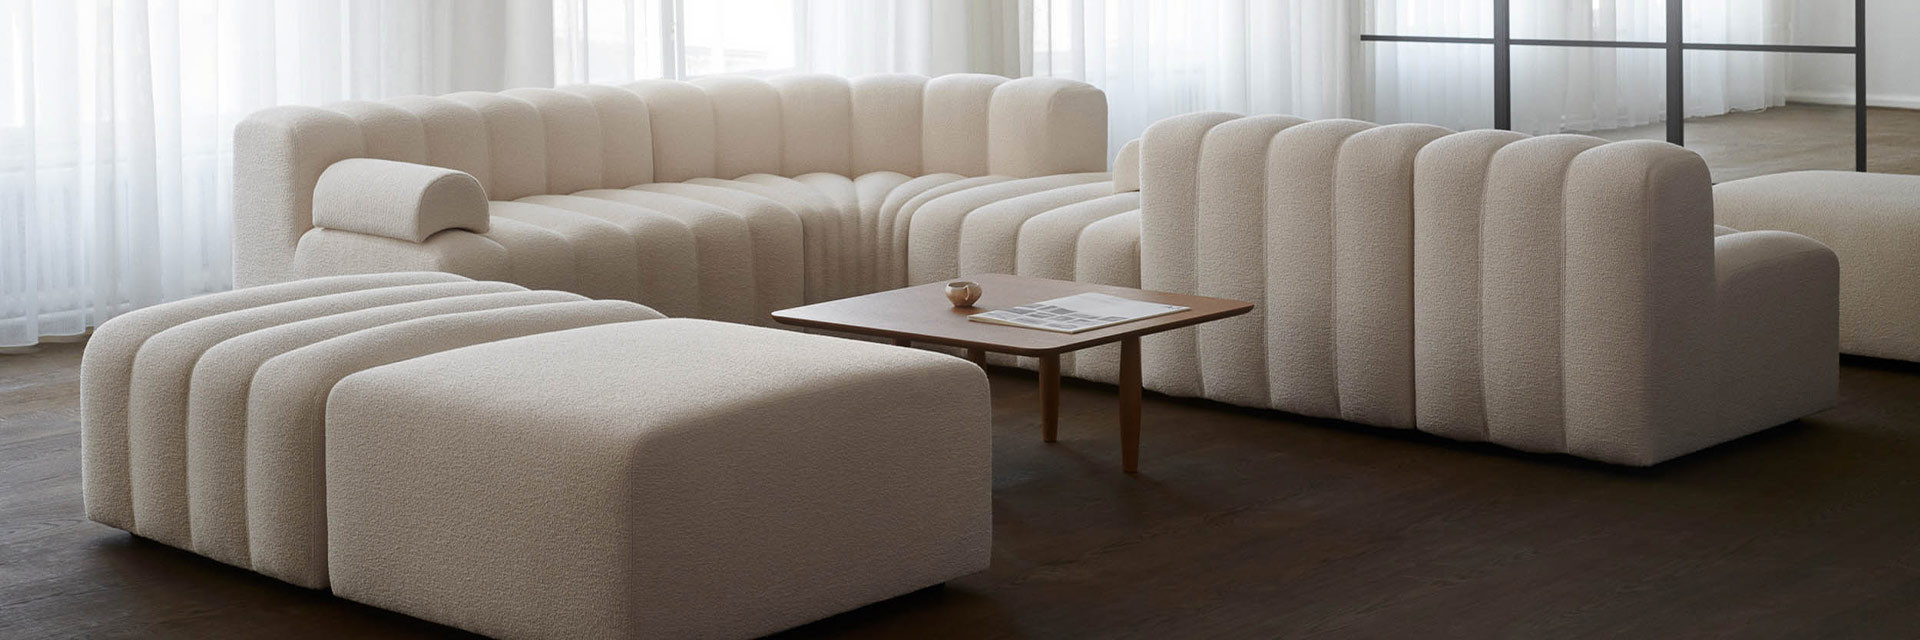 Canapé design scandinave et meuble danois de haute qualité